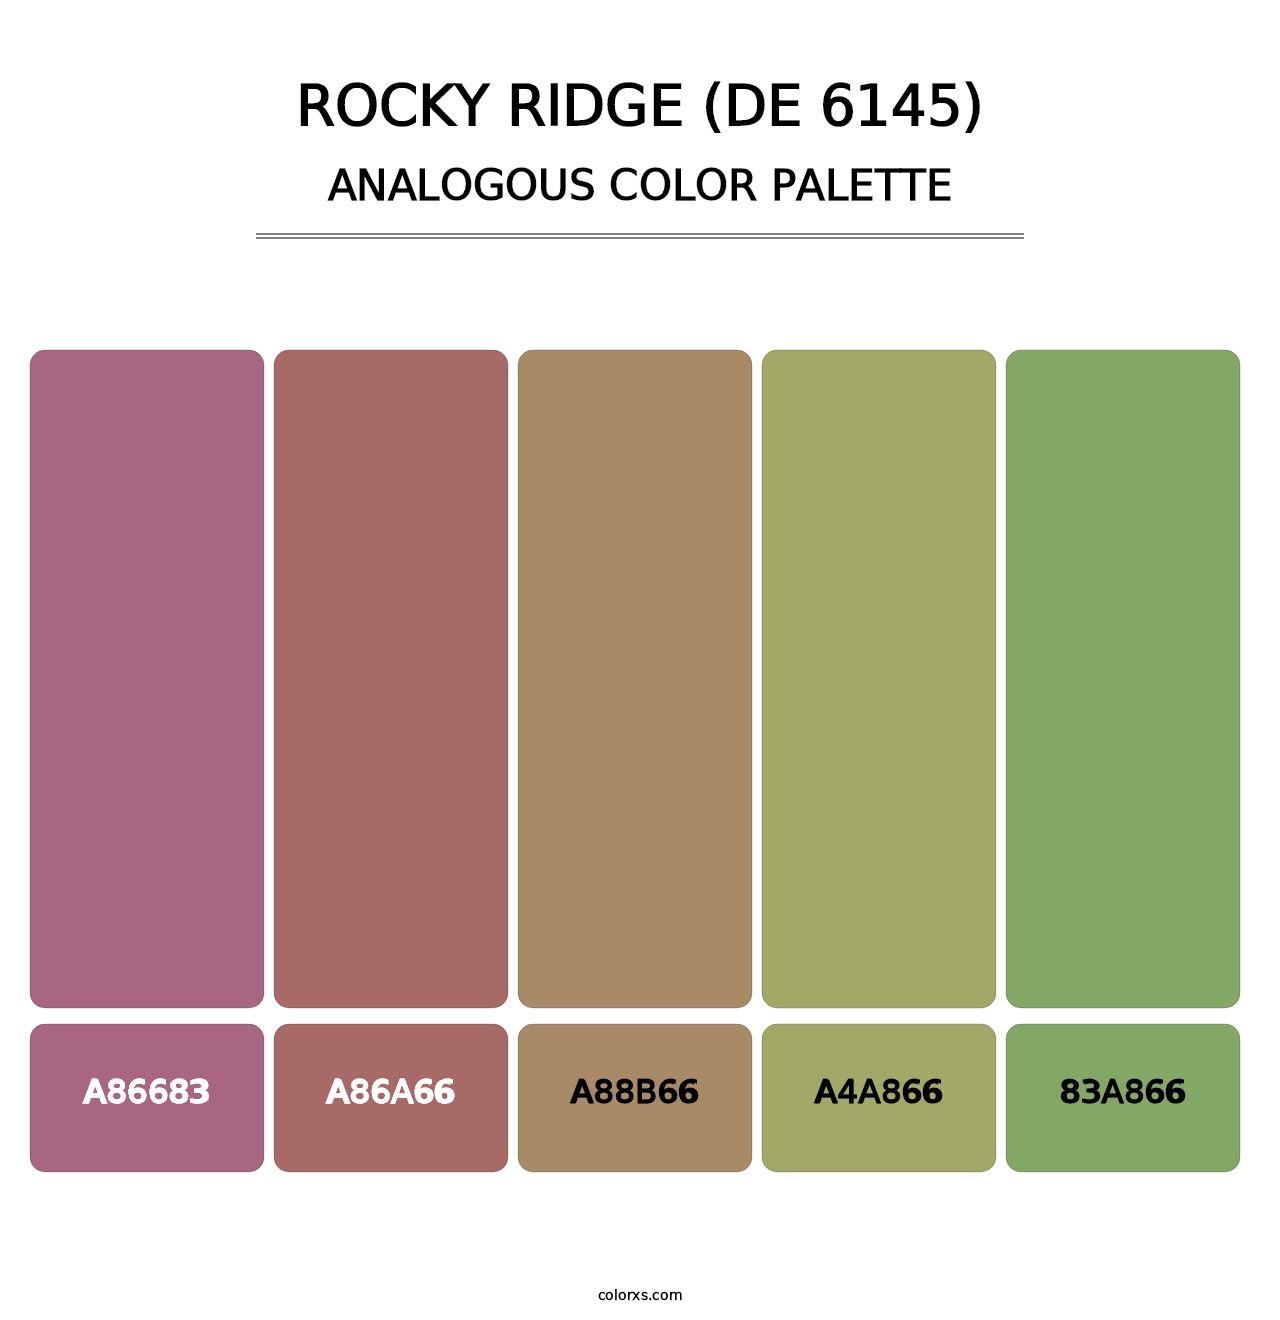 Rocky Ridge (DE 6145) - Analogous Color Palette